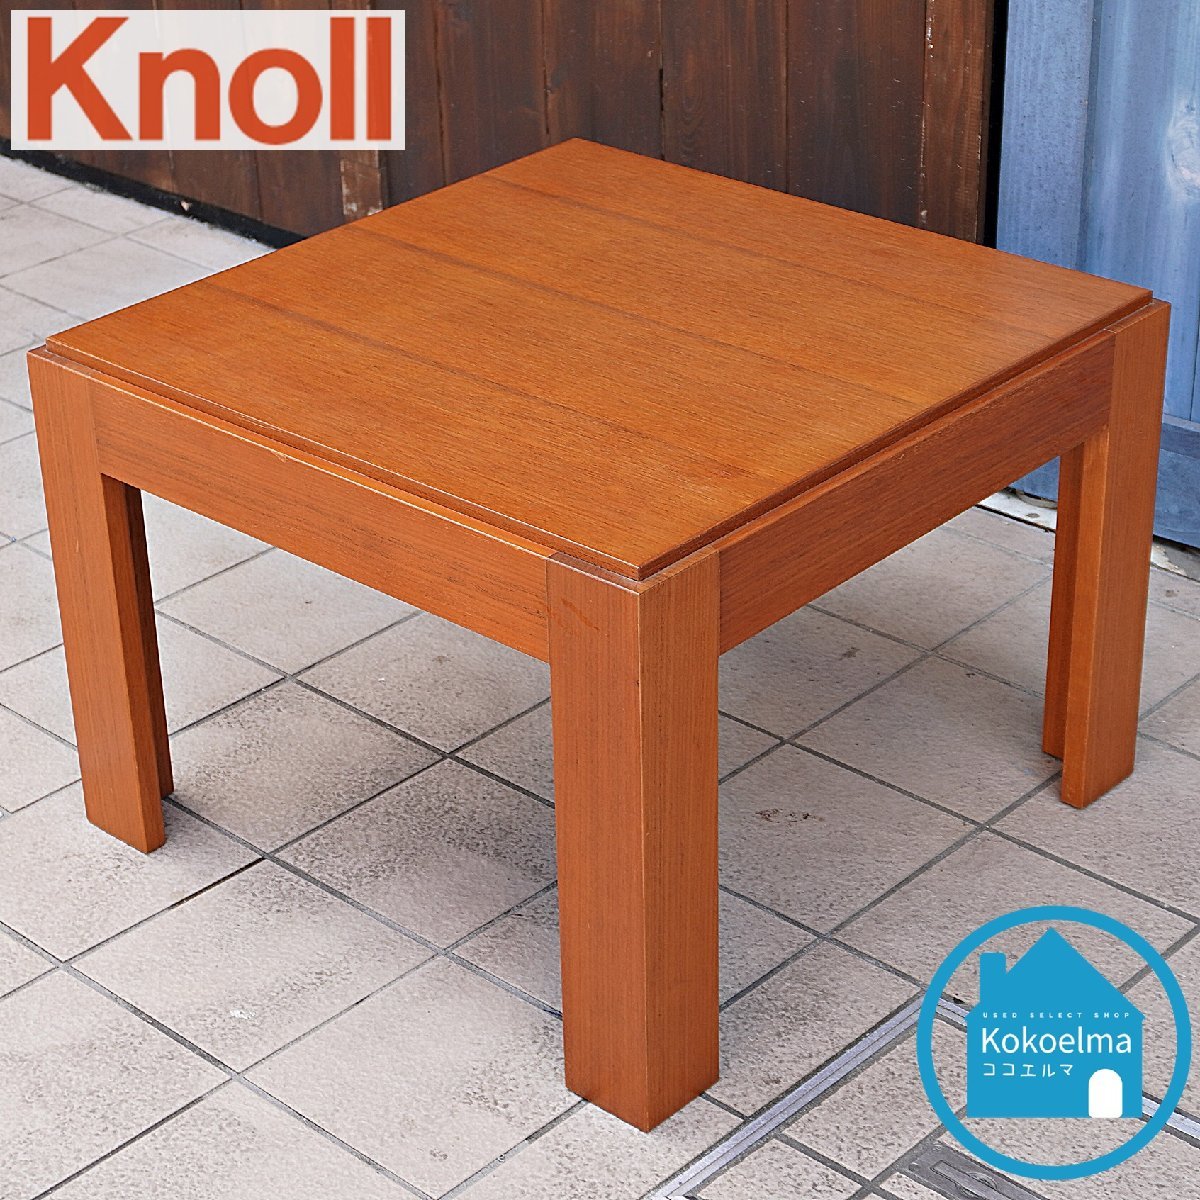 ノル knoll 高級センターテーブル コーヒーテーブル ローテーブル